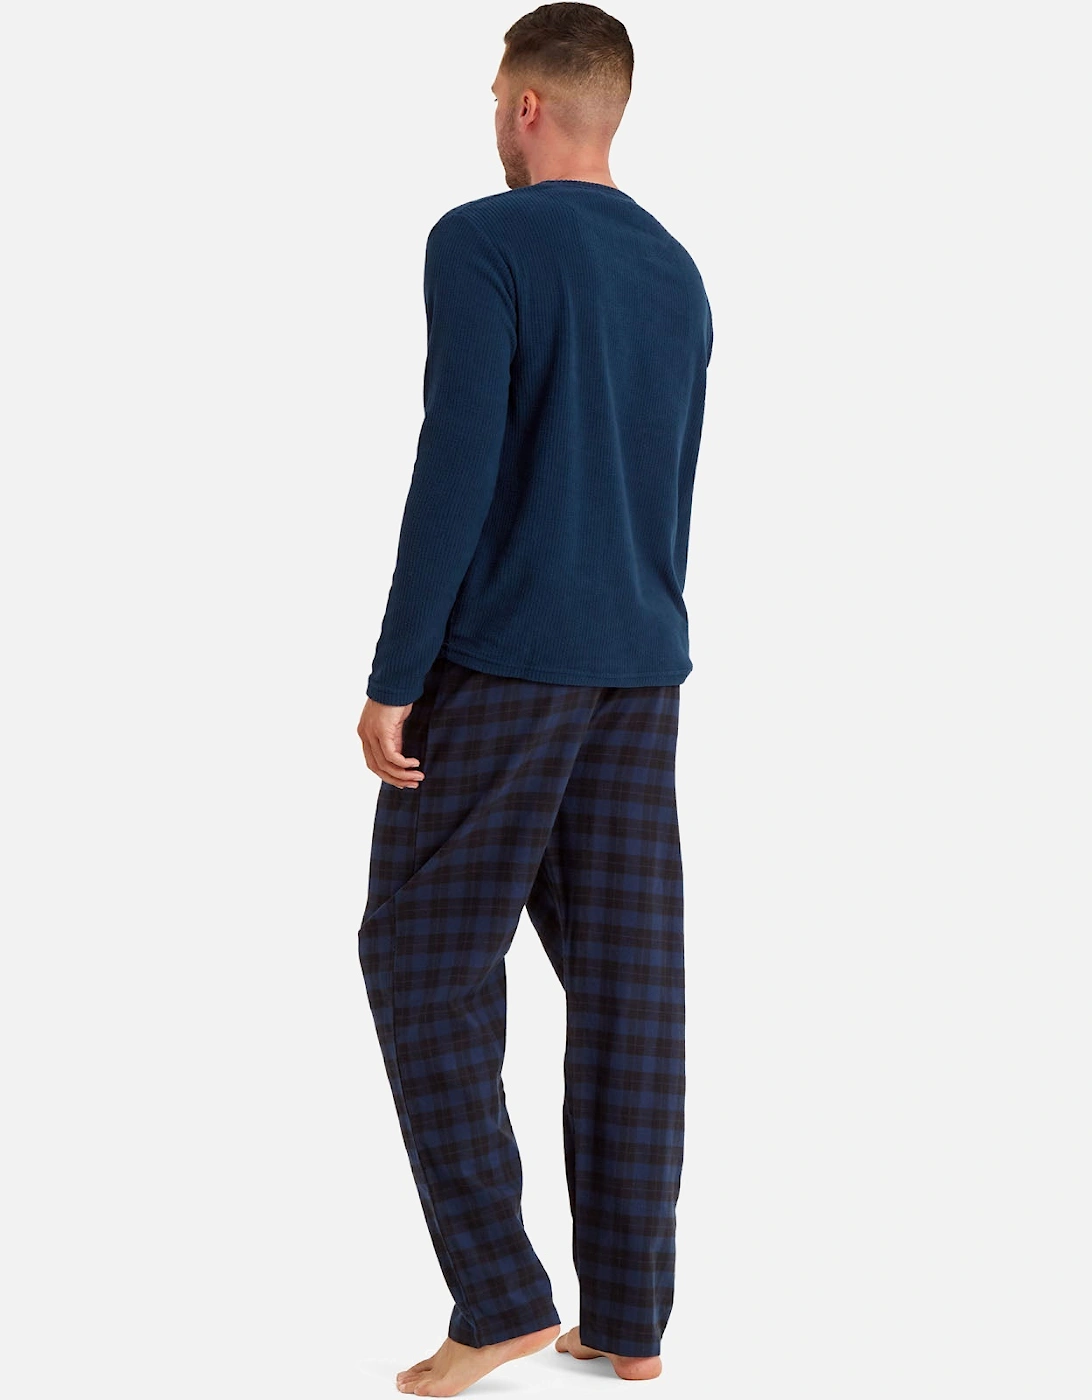 Mens Soft Fleece Checked Pyjamas Set